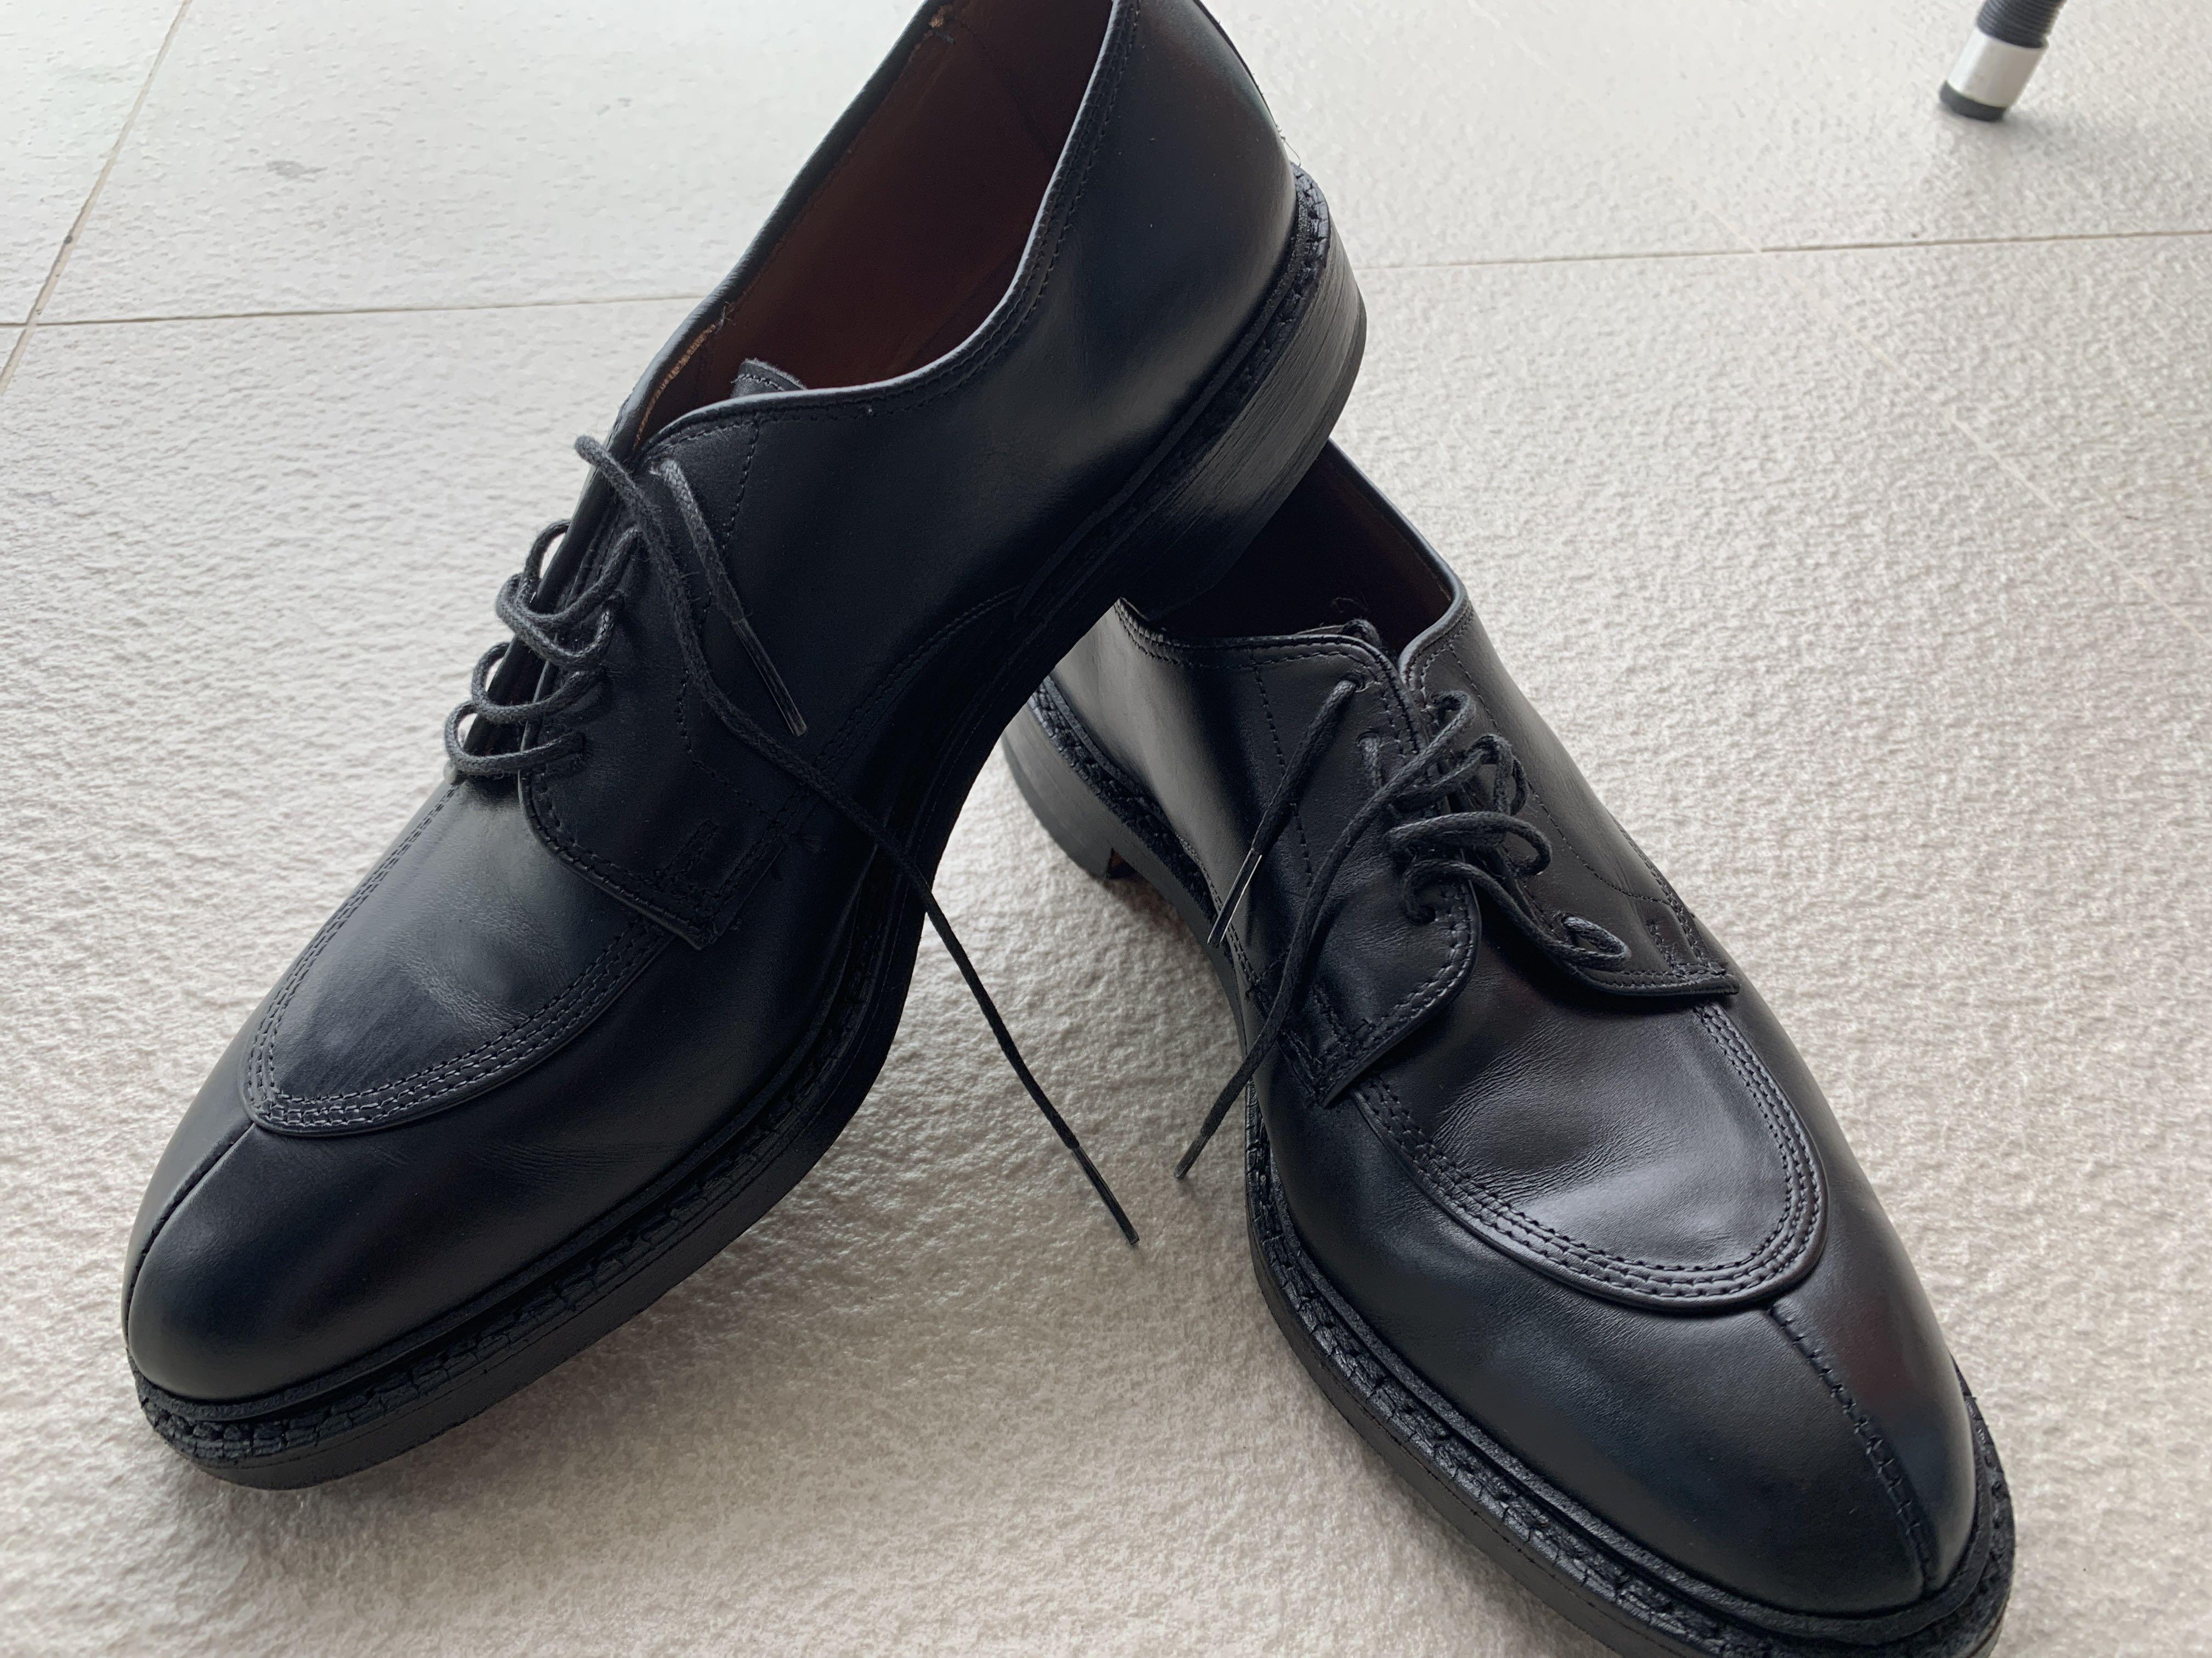 allen edmonds black dress shoes